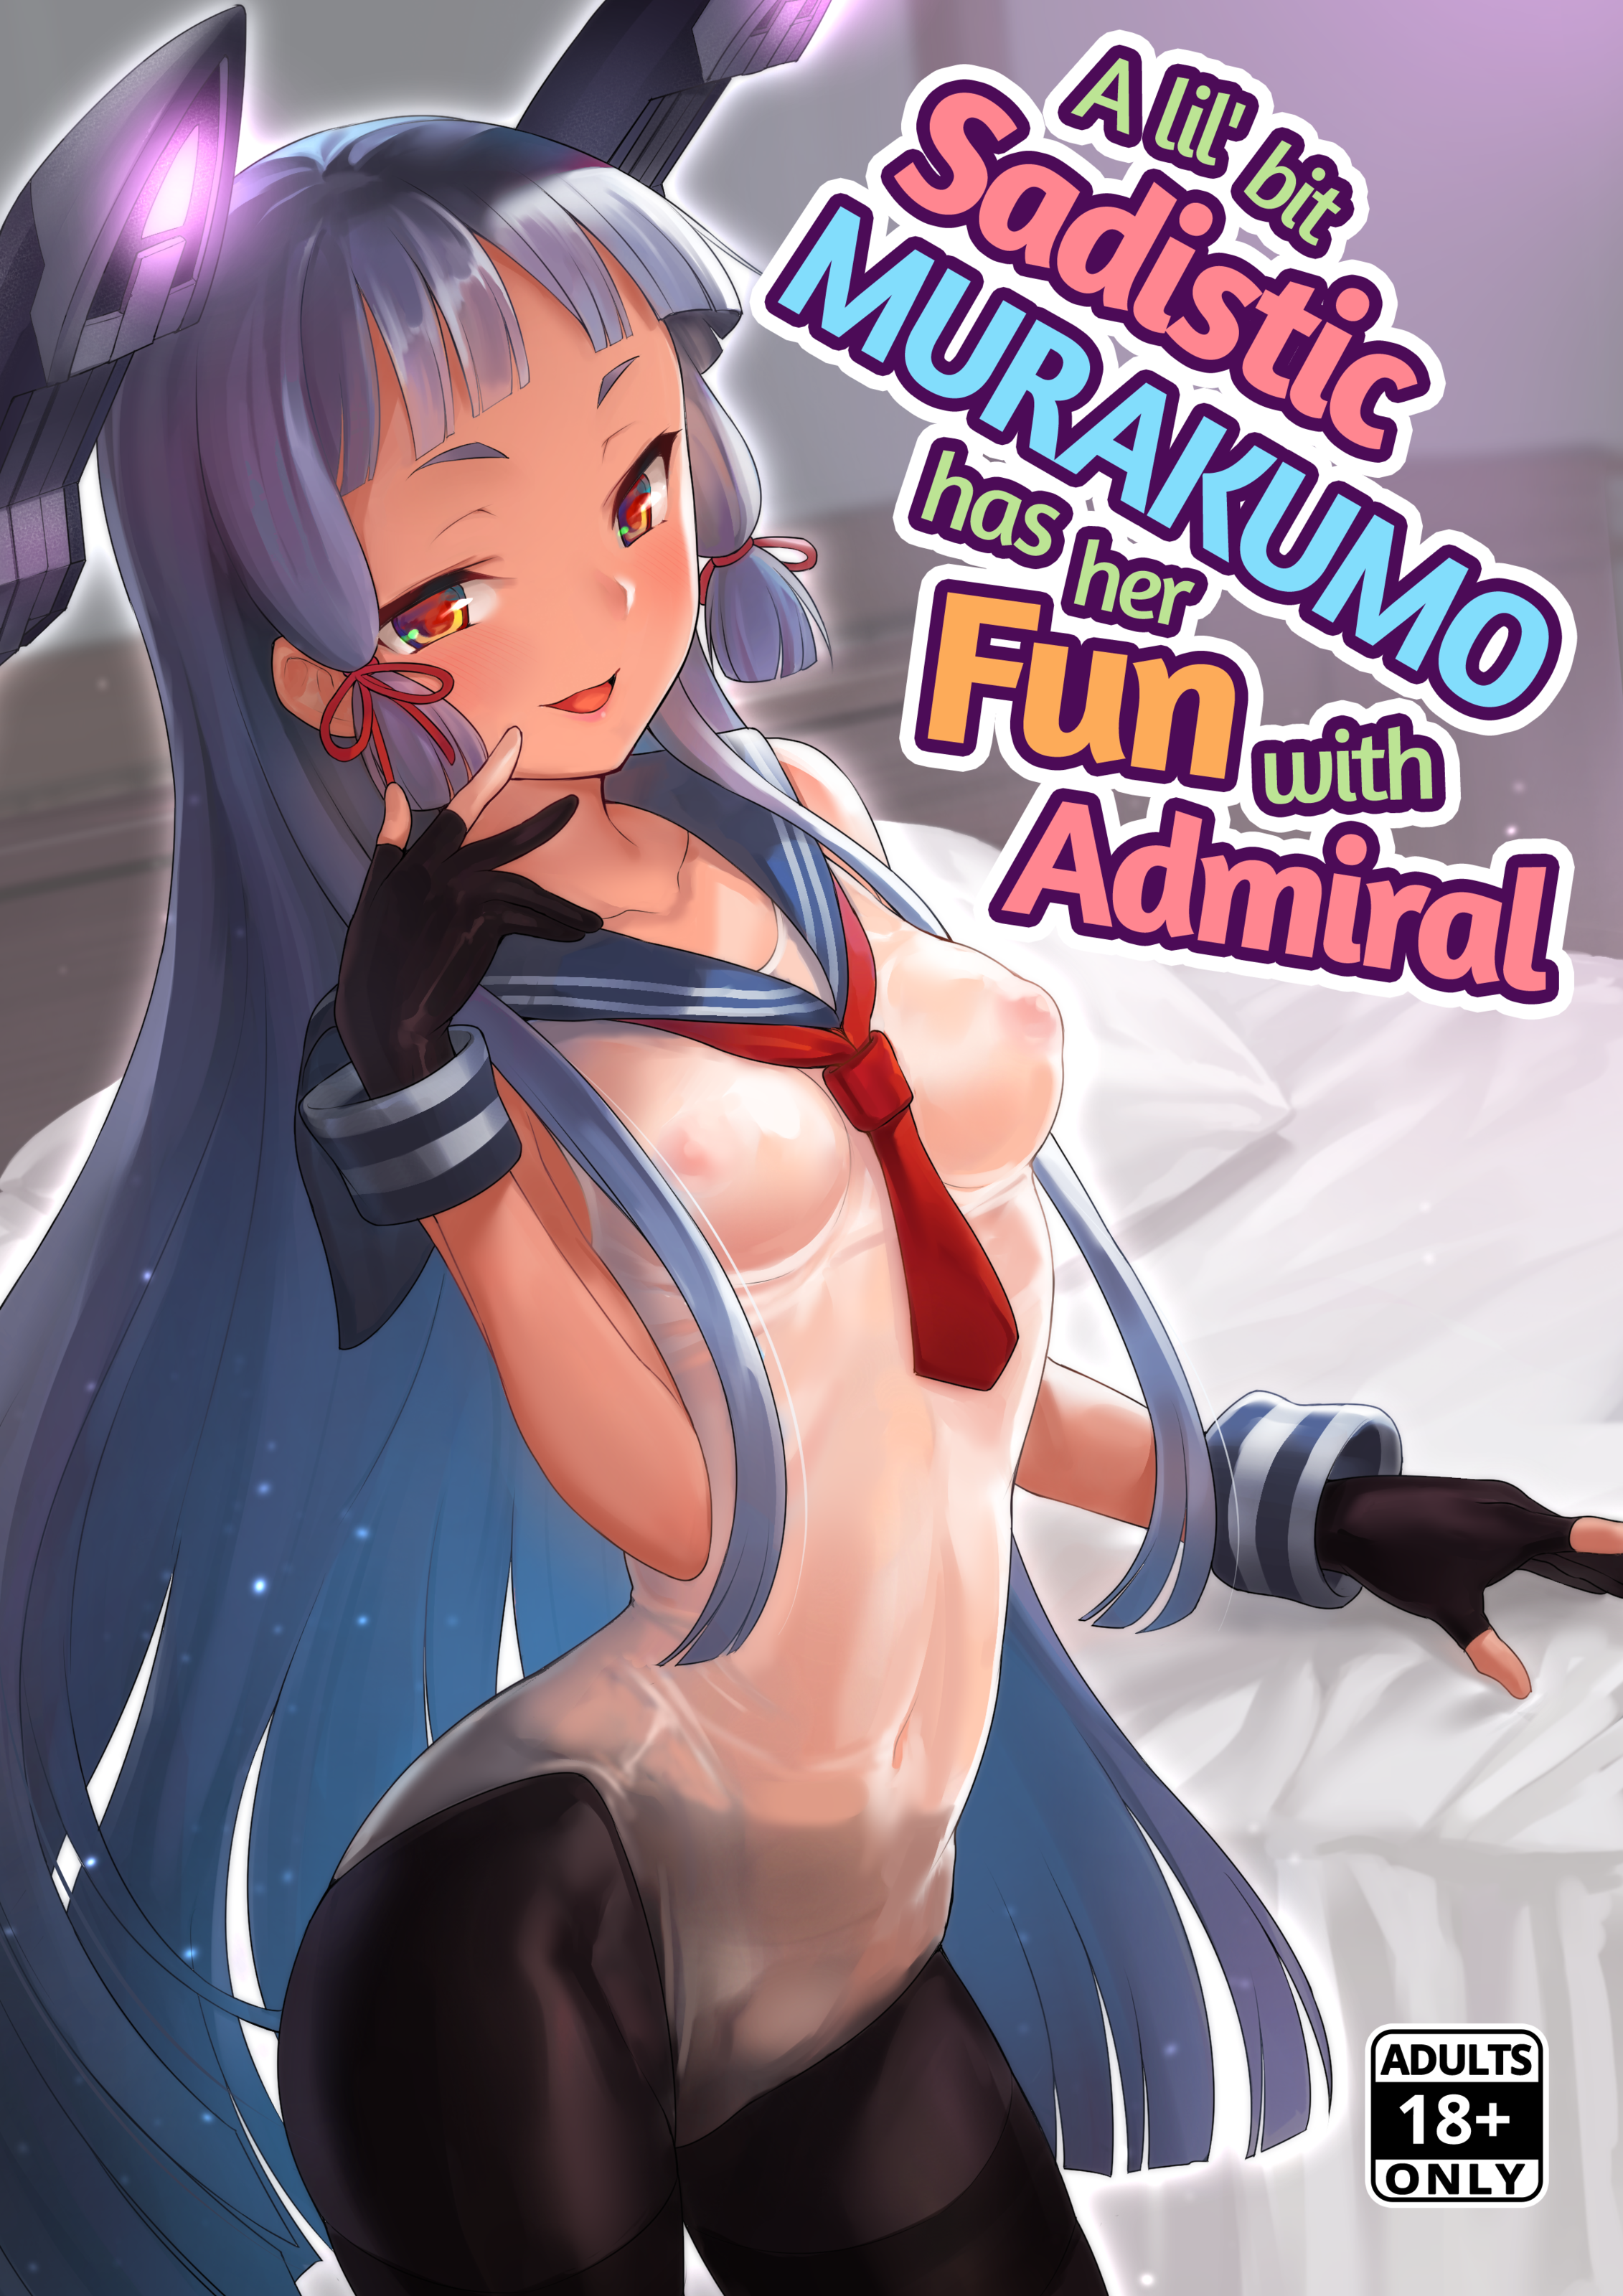 [ナマナマゴ (柴七世)] ちょっとSな叢雲と結局イチャつく本 (艦隊これくしょん -艦これ-)｜[Namanamago (Shiba Nanasei)] A Lil’ Bit Sadistic Murakumo Has Her Fun With Admiral[無修正]